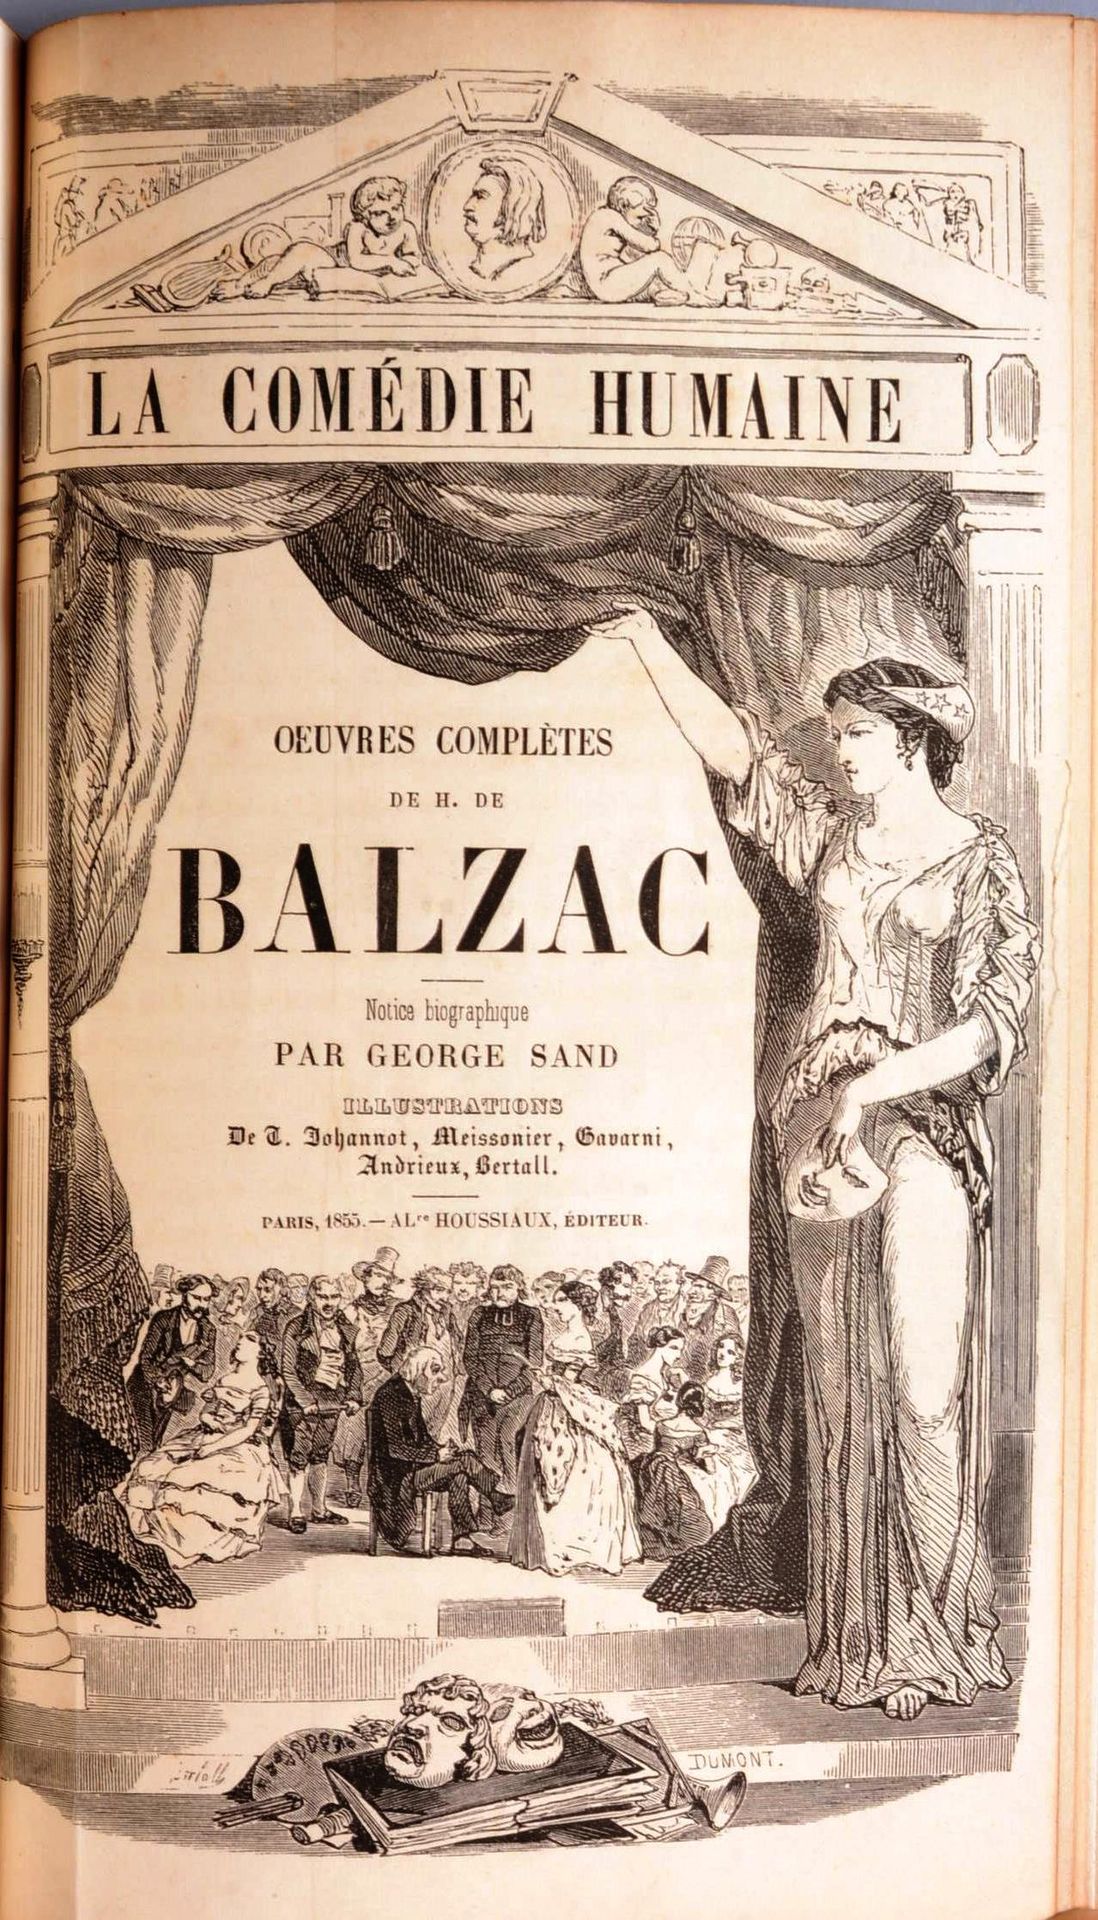 BALZAC Honoré de BALZAC Honoré de



 Oeuvres complètes - La Comédie humaine



&hellip;